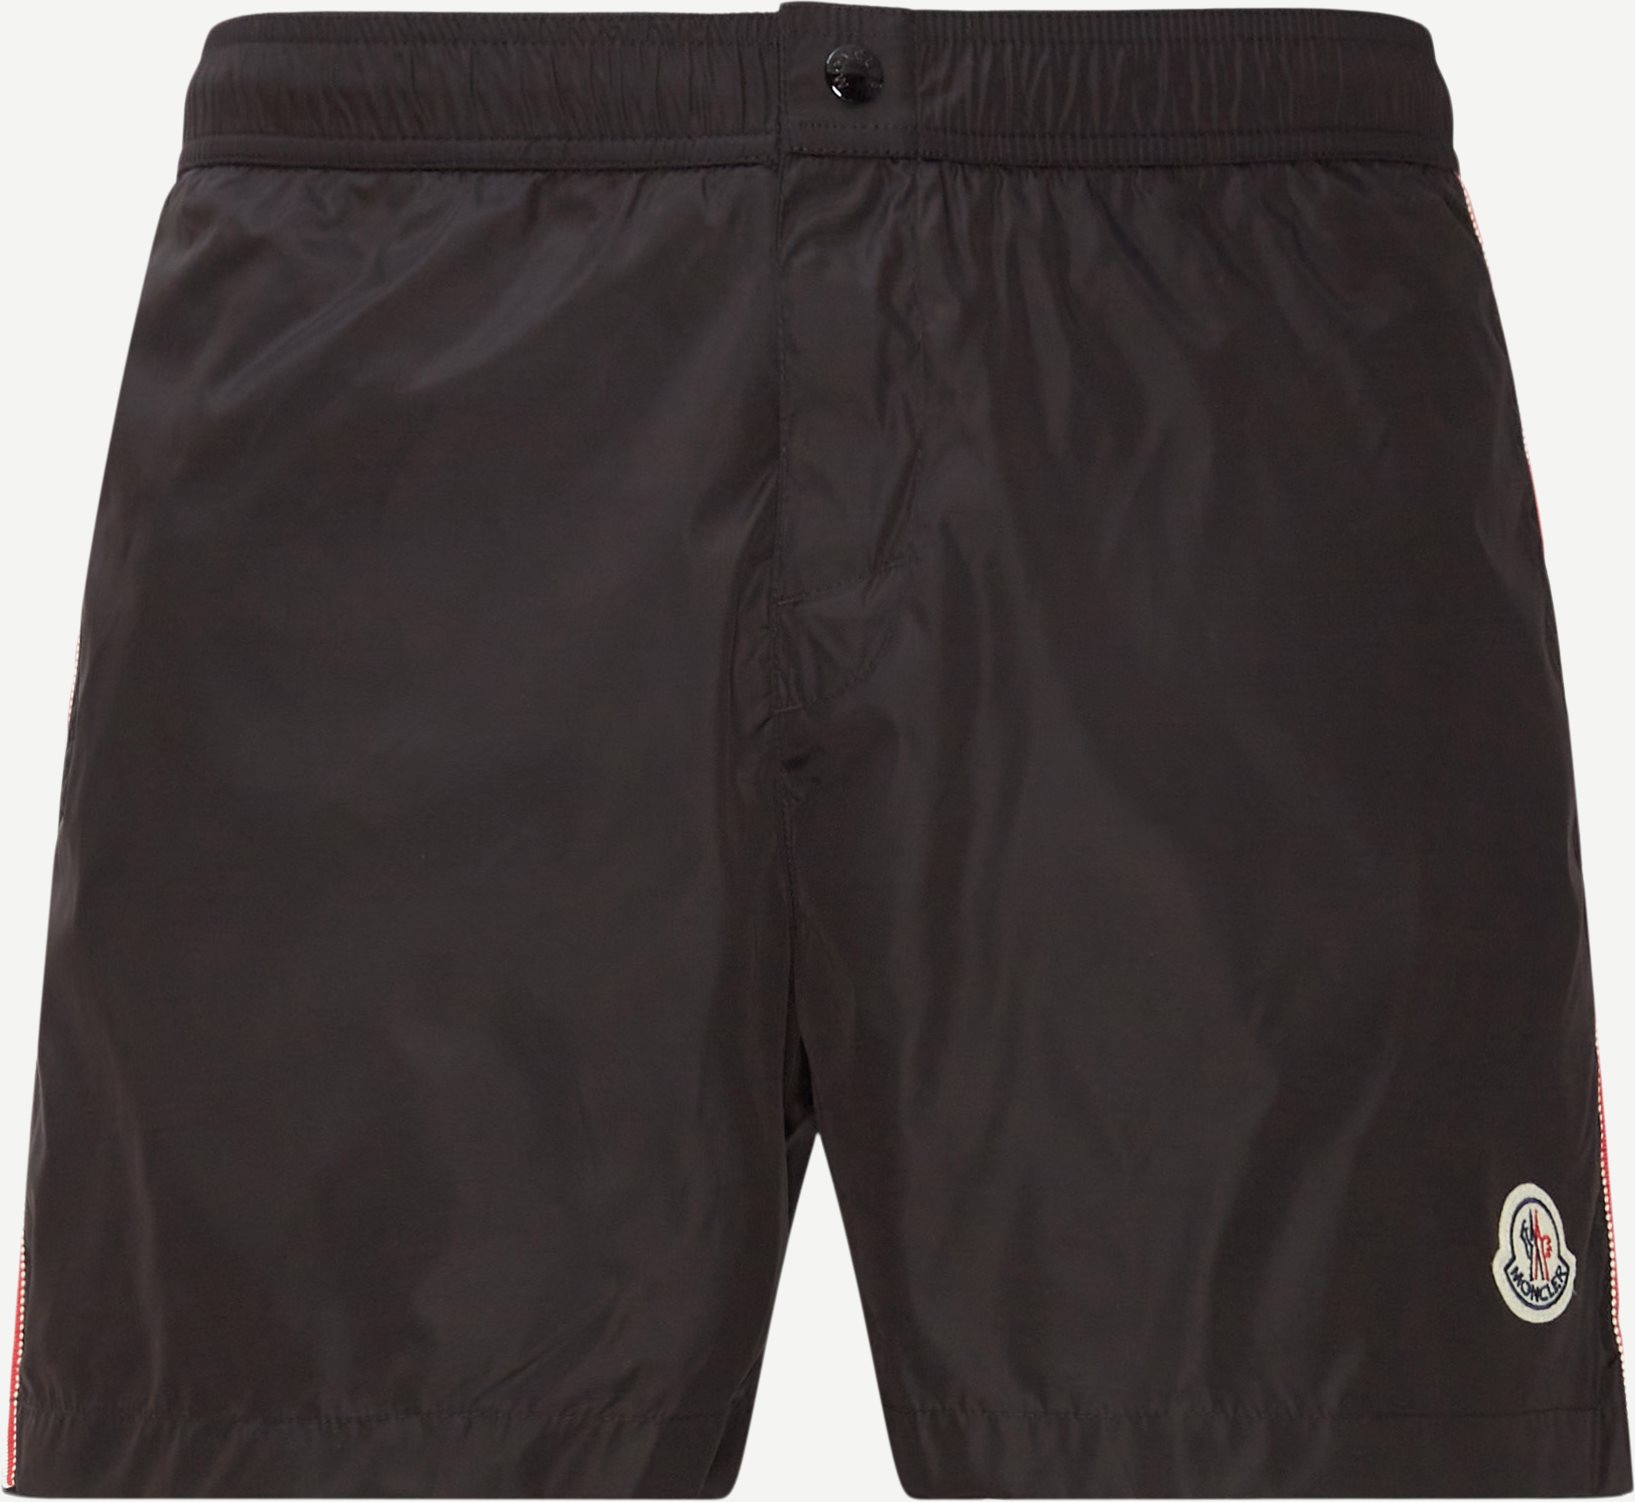 Boxer Mare Badeshorts - Shorts - Regular fit - Sort